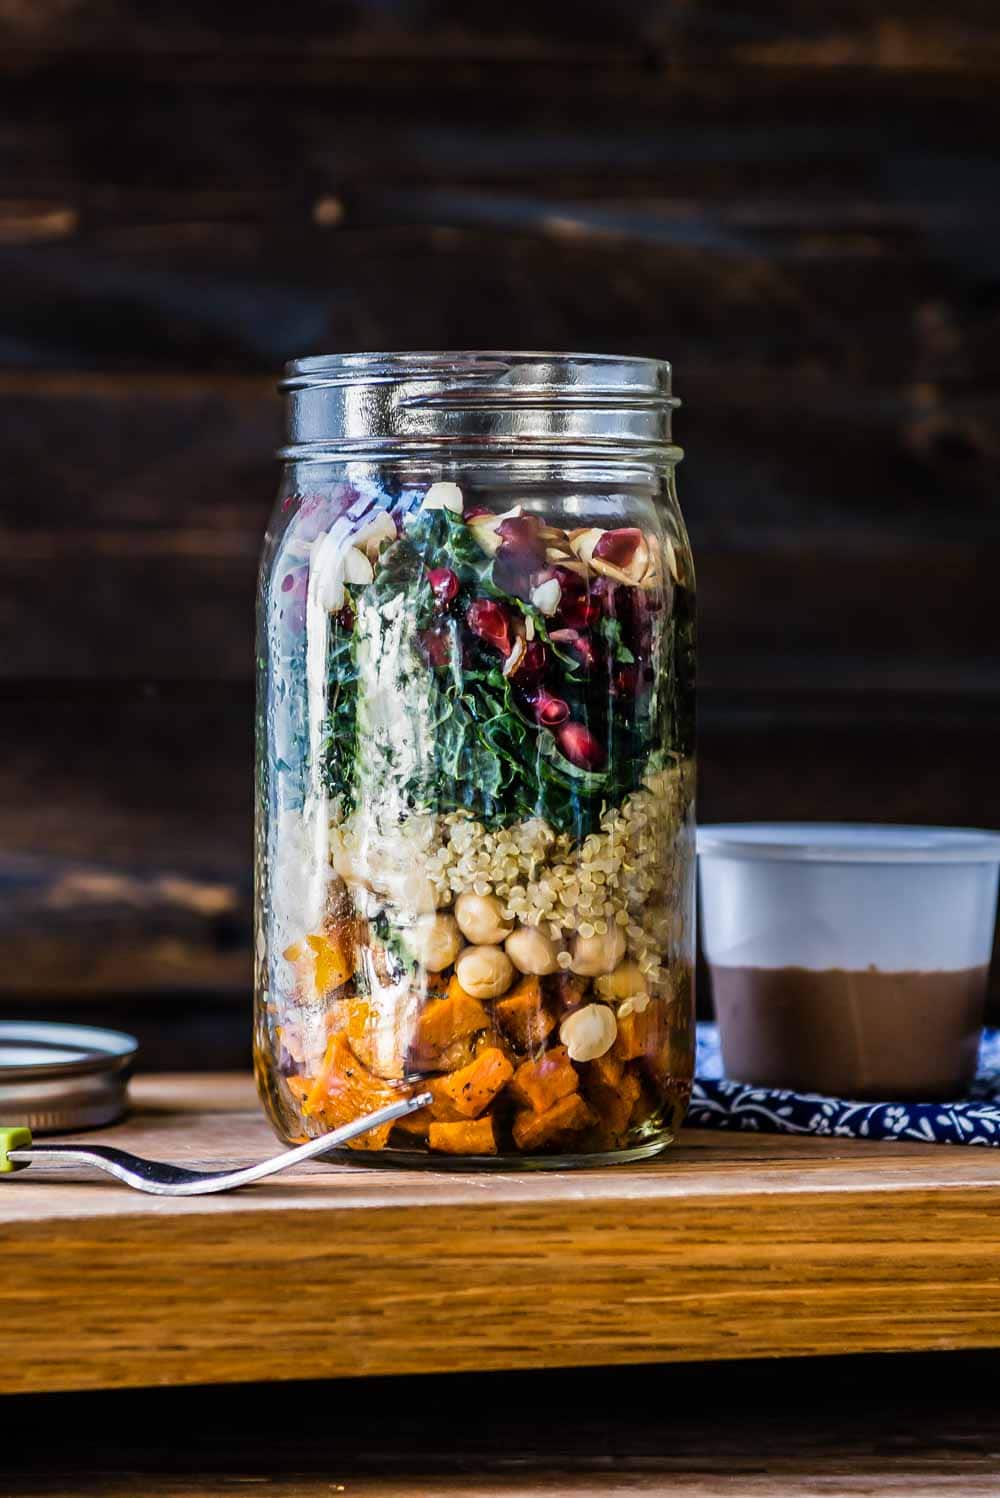 Vegan salad with autumn ingredients— sweet potatoes, garbanzo beans, kale